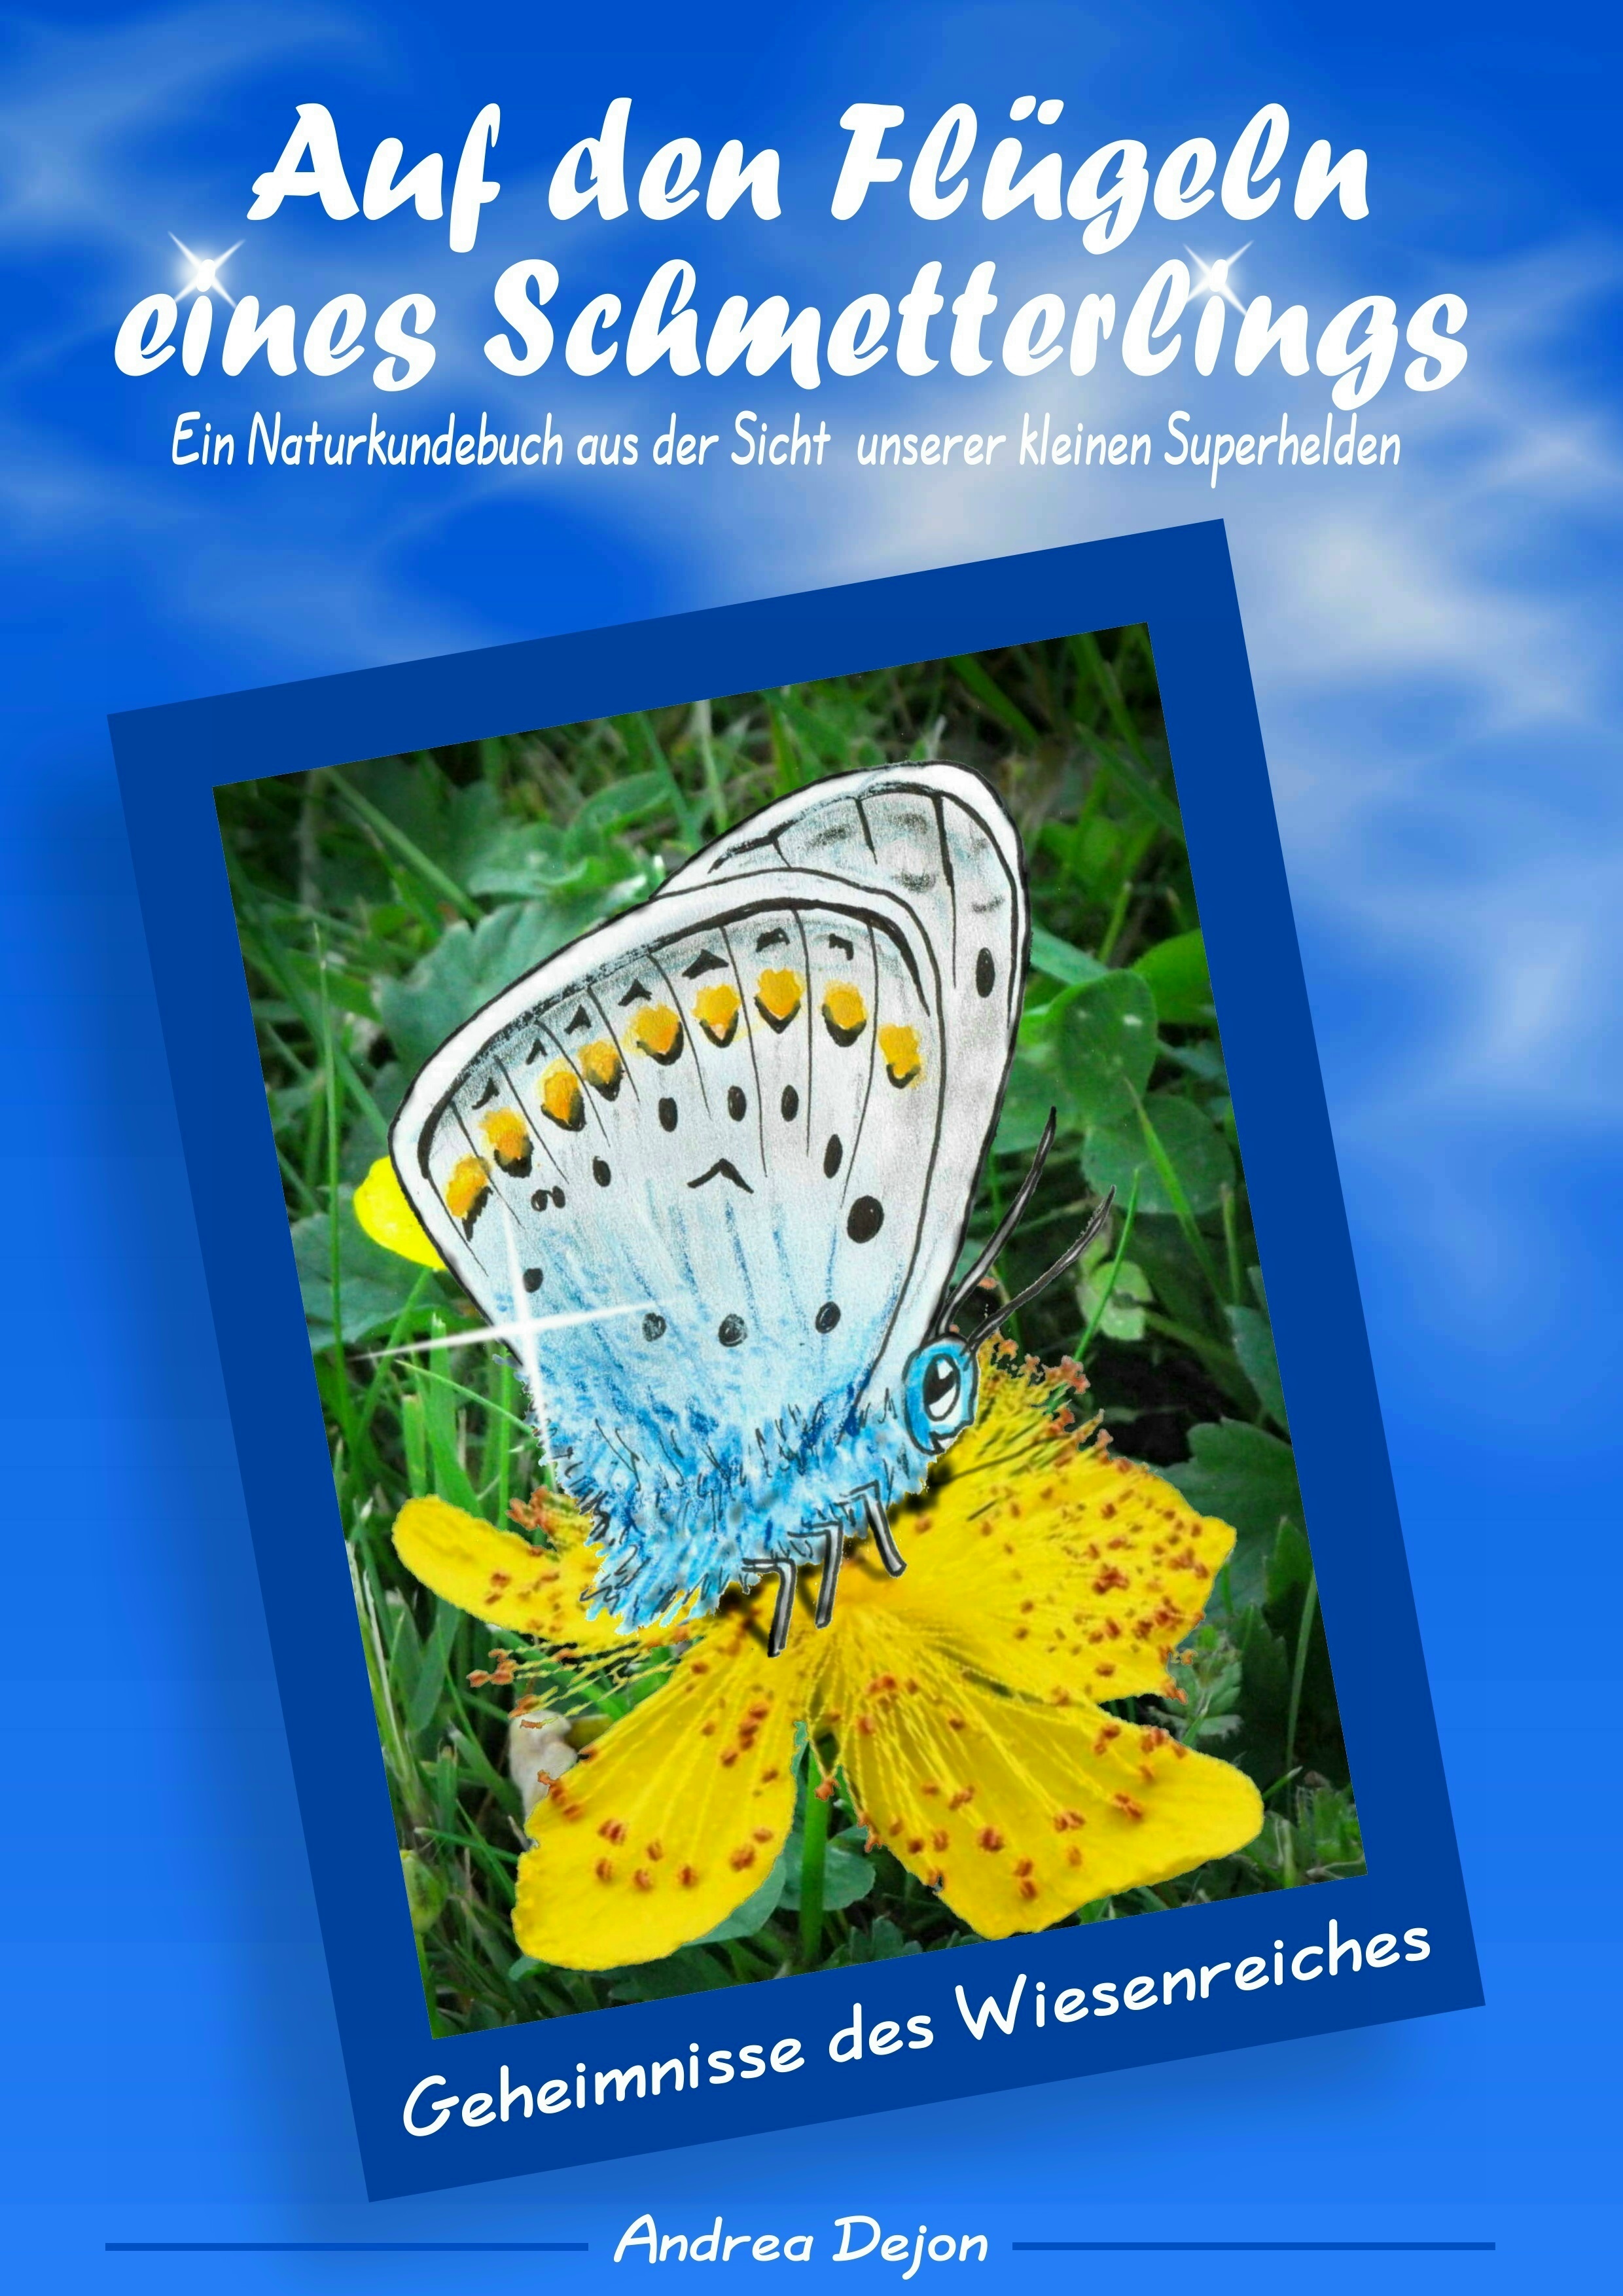 Erlebnis-Naturkundebuch mit ca. 200 farbigen Illustrationen
Umweltministerium Saarland